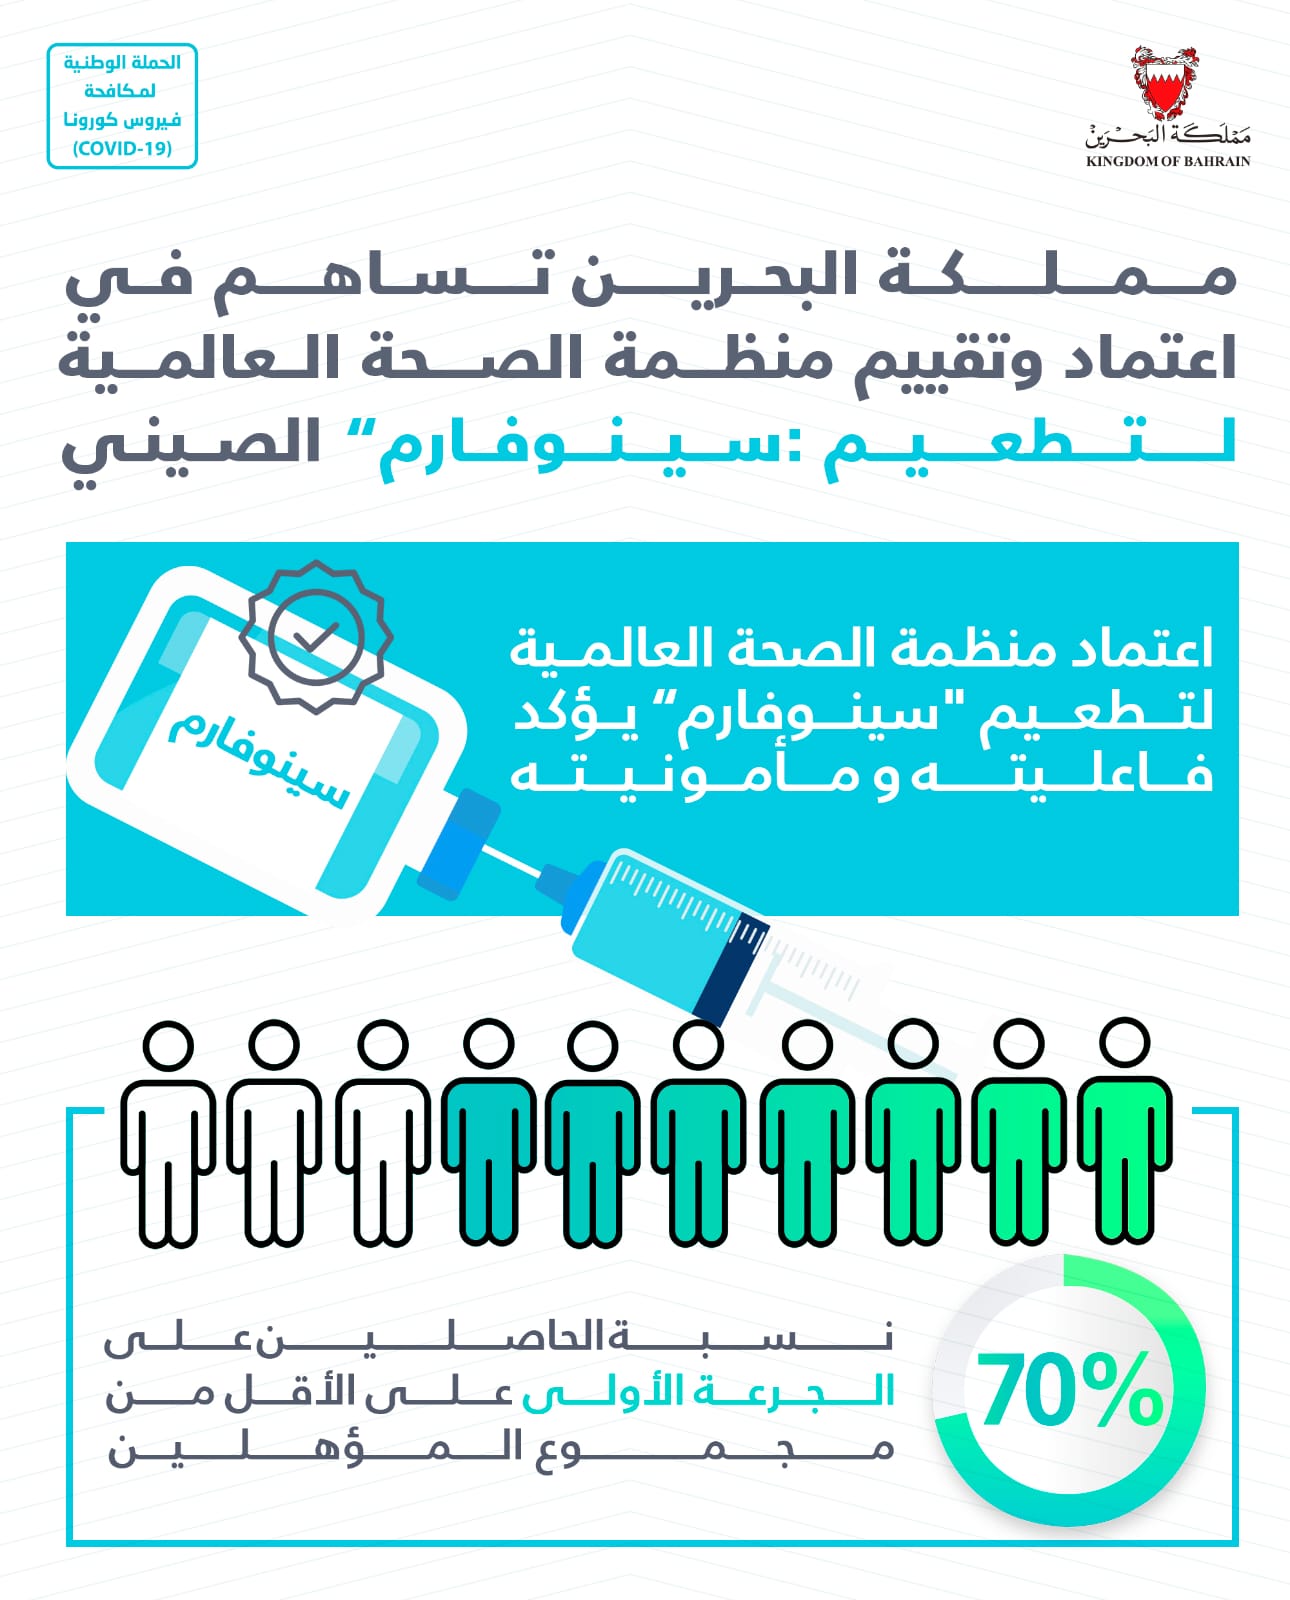 في البحرين نسبة الحاصلين على الجرعة الأولى من كافة أنواع التطعيمات 70%.. مملكة البحرين تساهم في اعتماد وتقييم منظمة الصحة العالمية لتطعيم "سينوفارم" الصيني